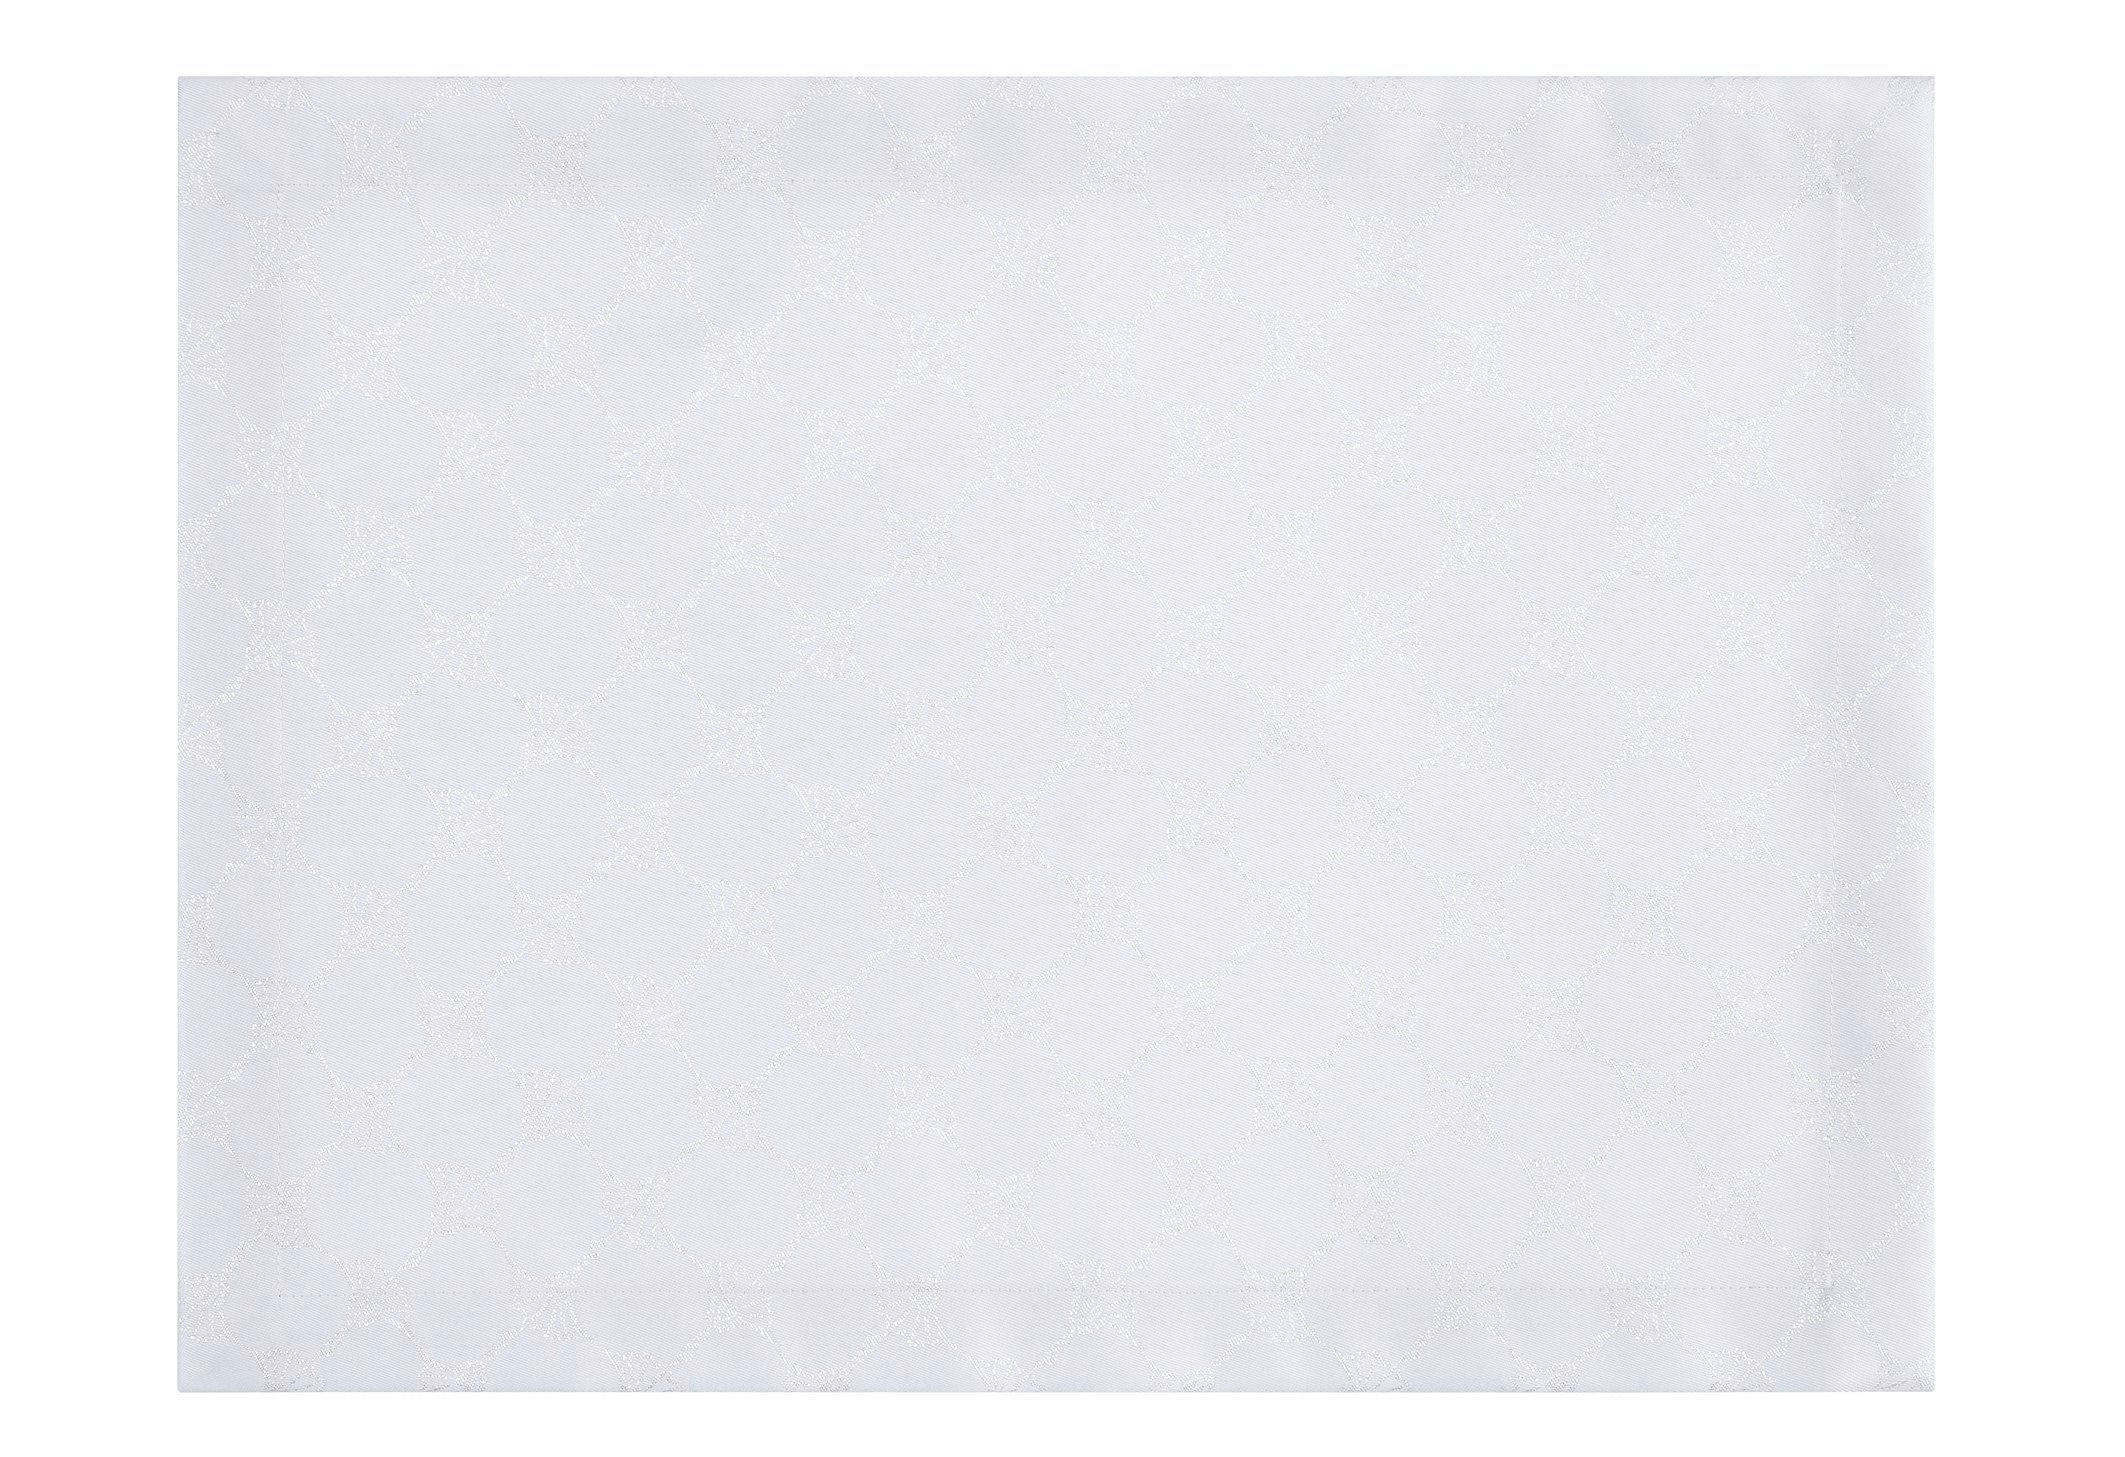 TISCHSET 2ER SET Textil Weiß 36/48 cm  - Weiß, Design, Textil (36/48cm) - Joop!